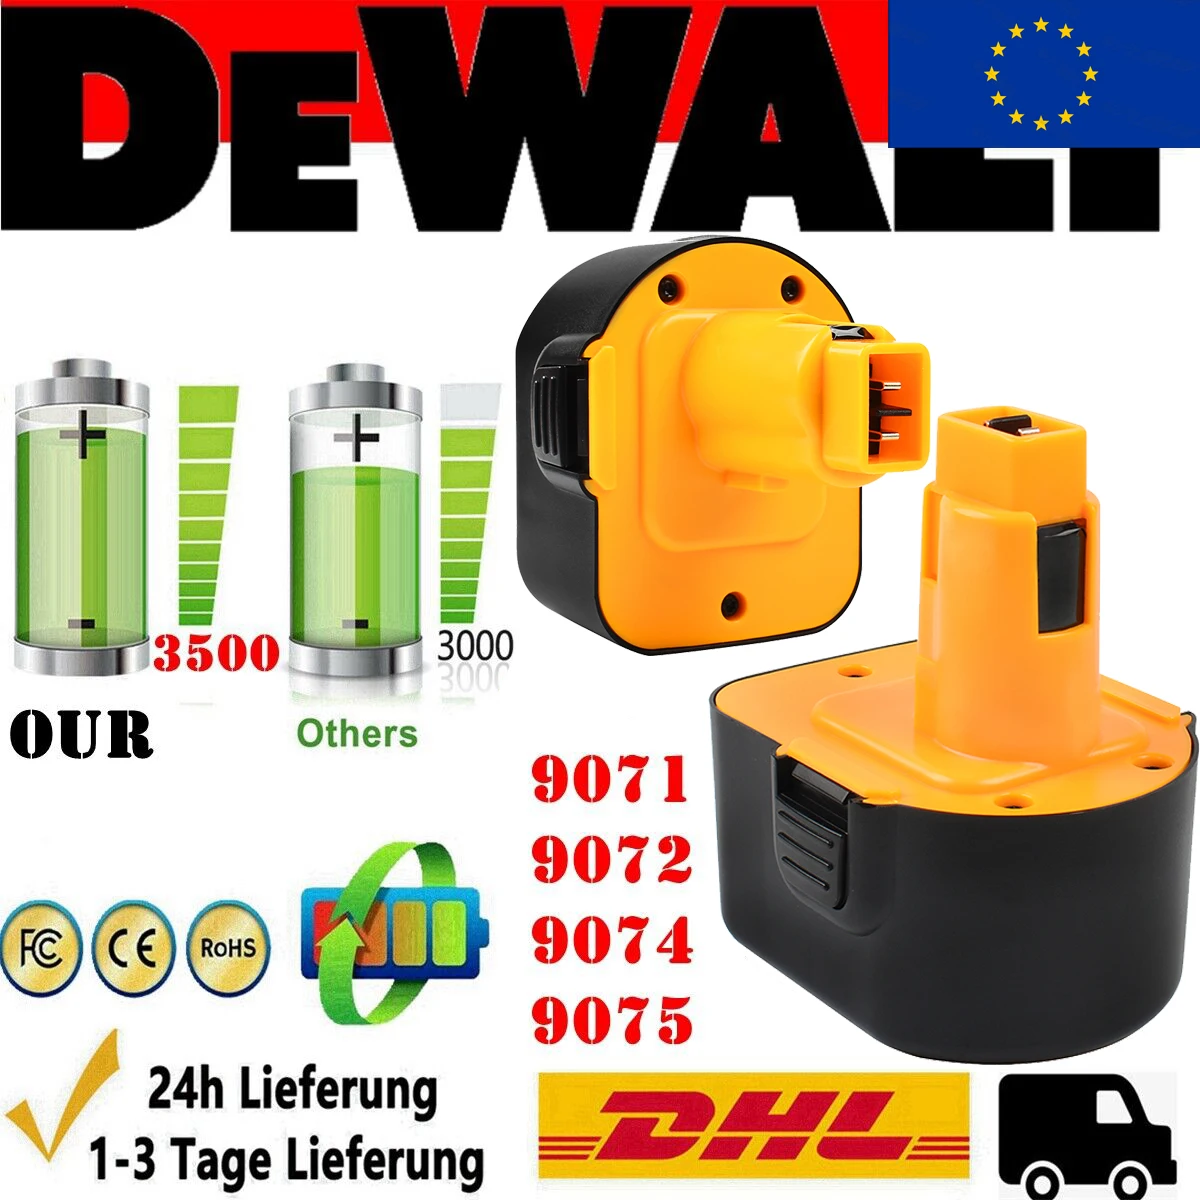 Dewalt De9074 Battery Pack 12v 1.3 Amp | Dewalt Battery 12v De9071 -  3500mah 12v - Aliexpress